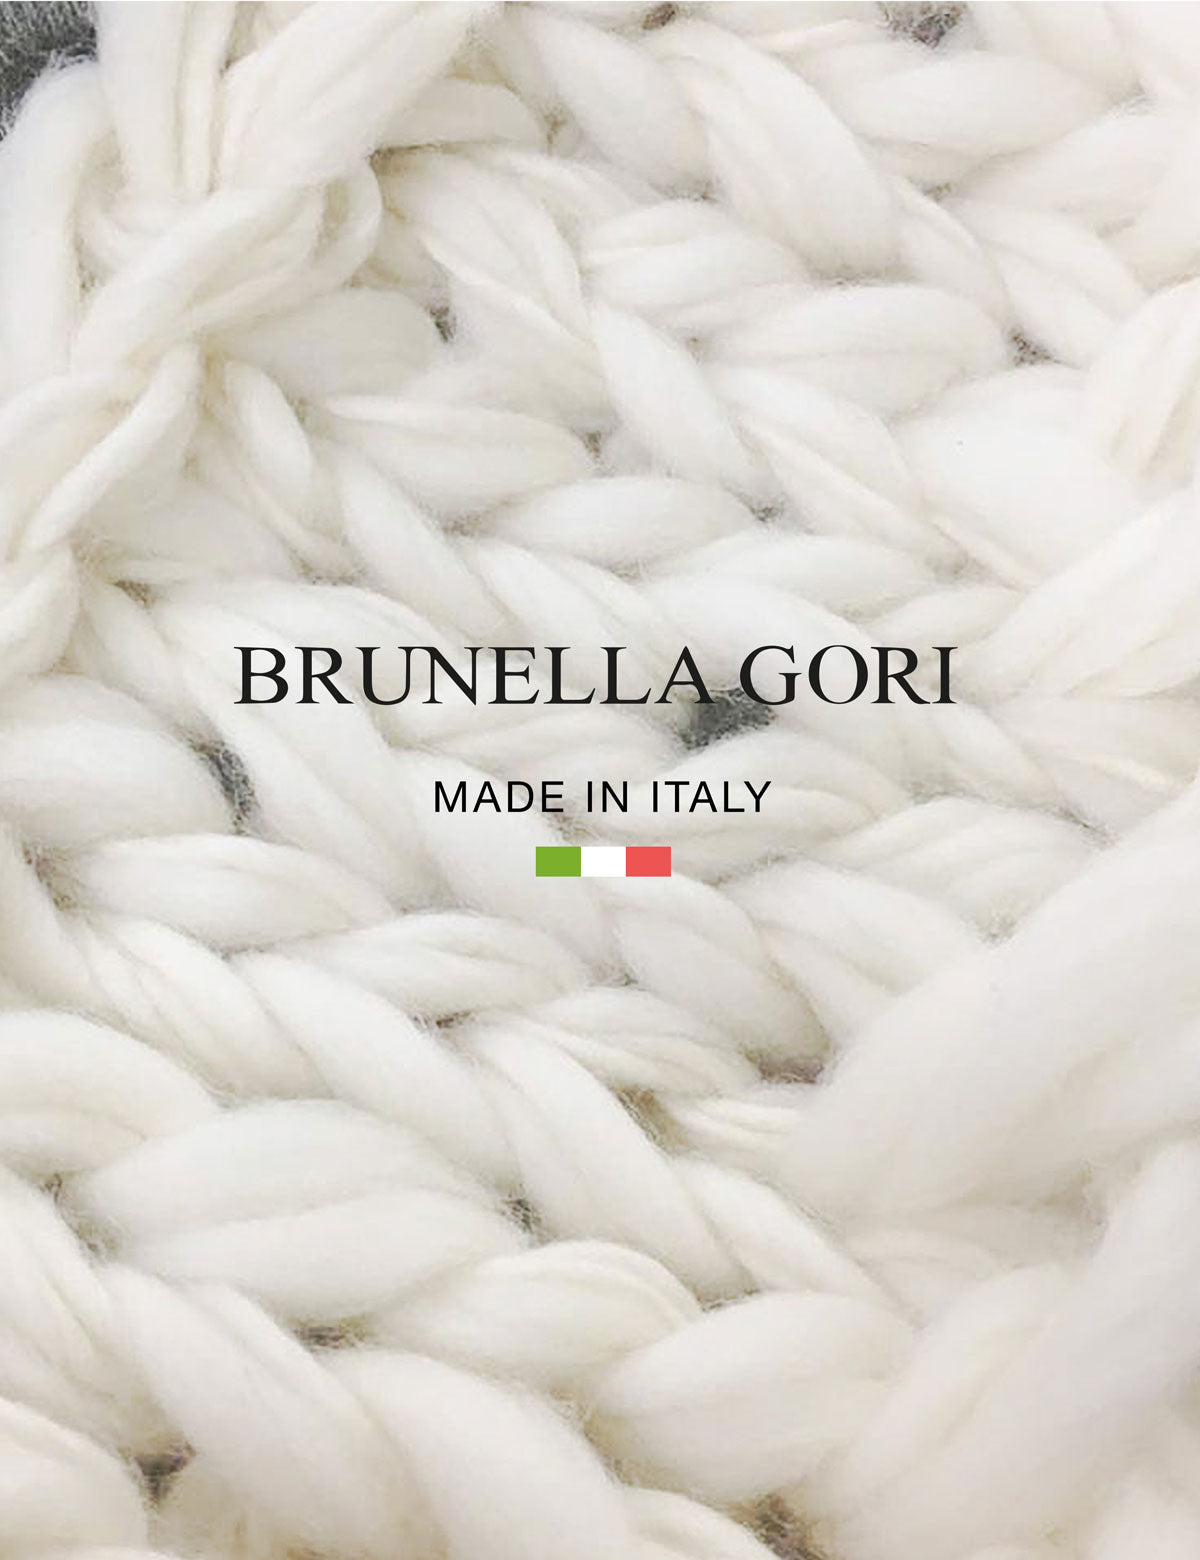 Maglione Dolcevita - Uomo, Autunno/Inverno - 100% Lana Vergine Merino Extrafine Mulesing Free - 100% Made in Italy | Brunella Gori